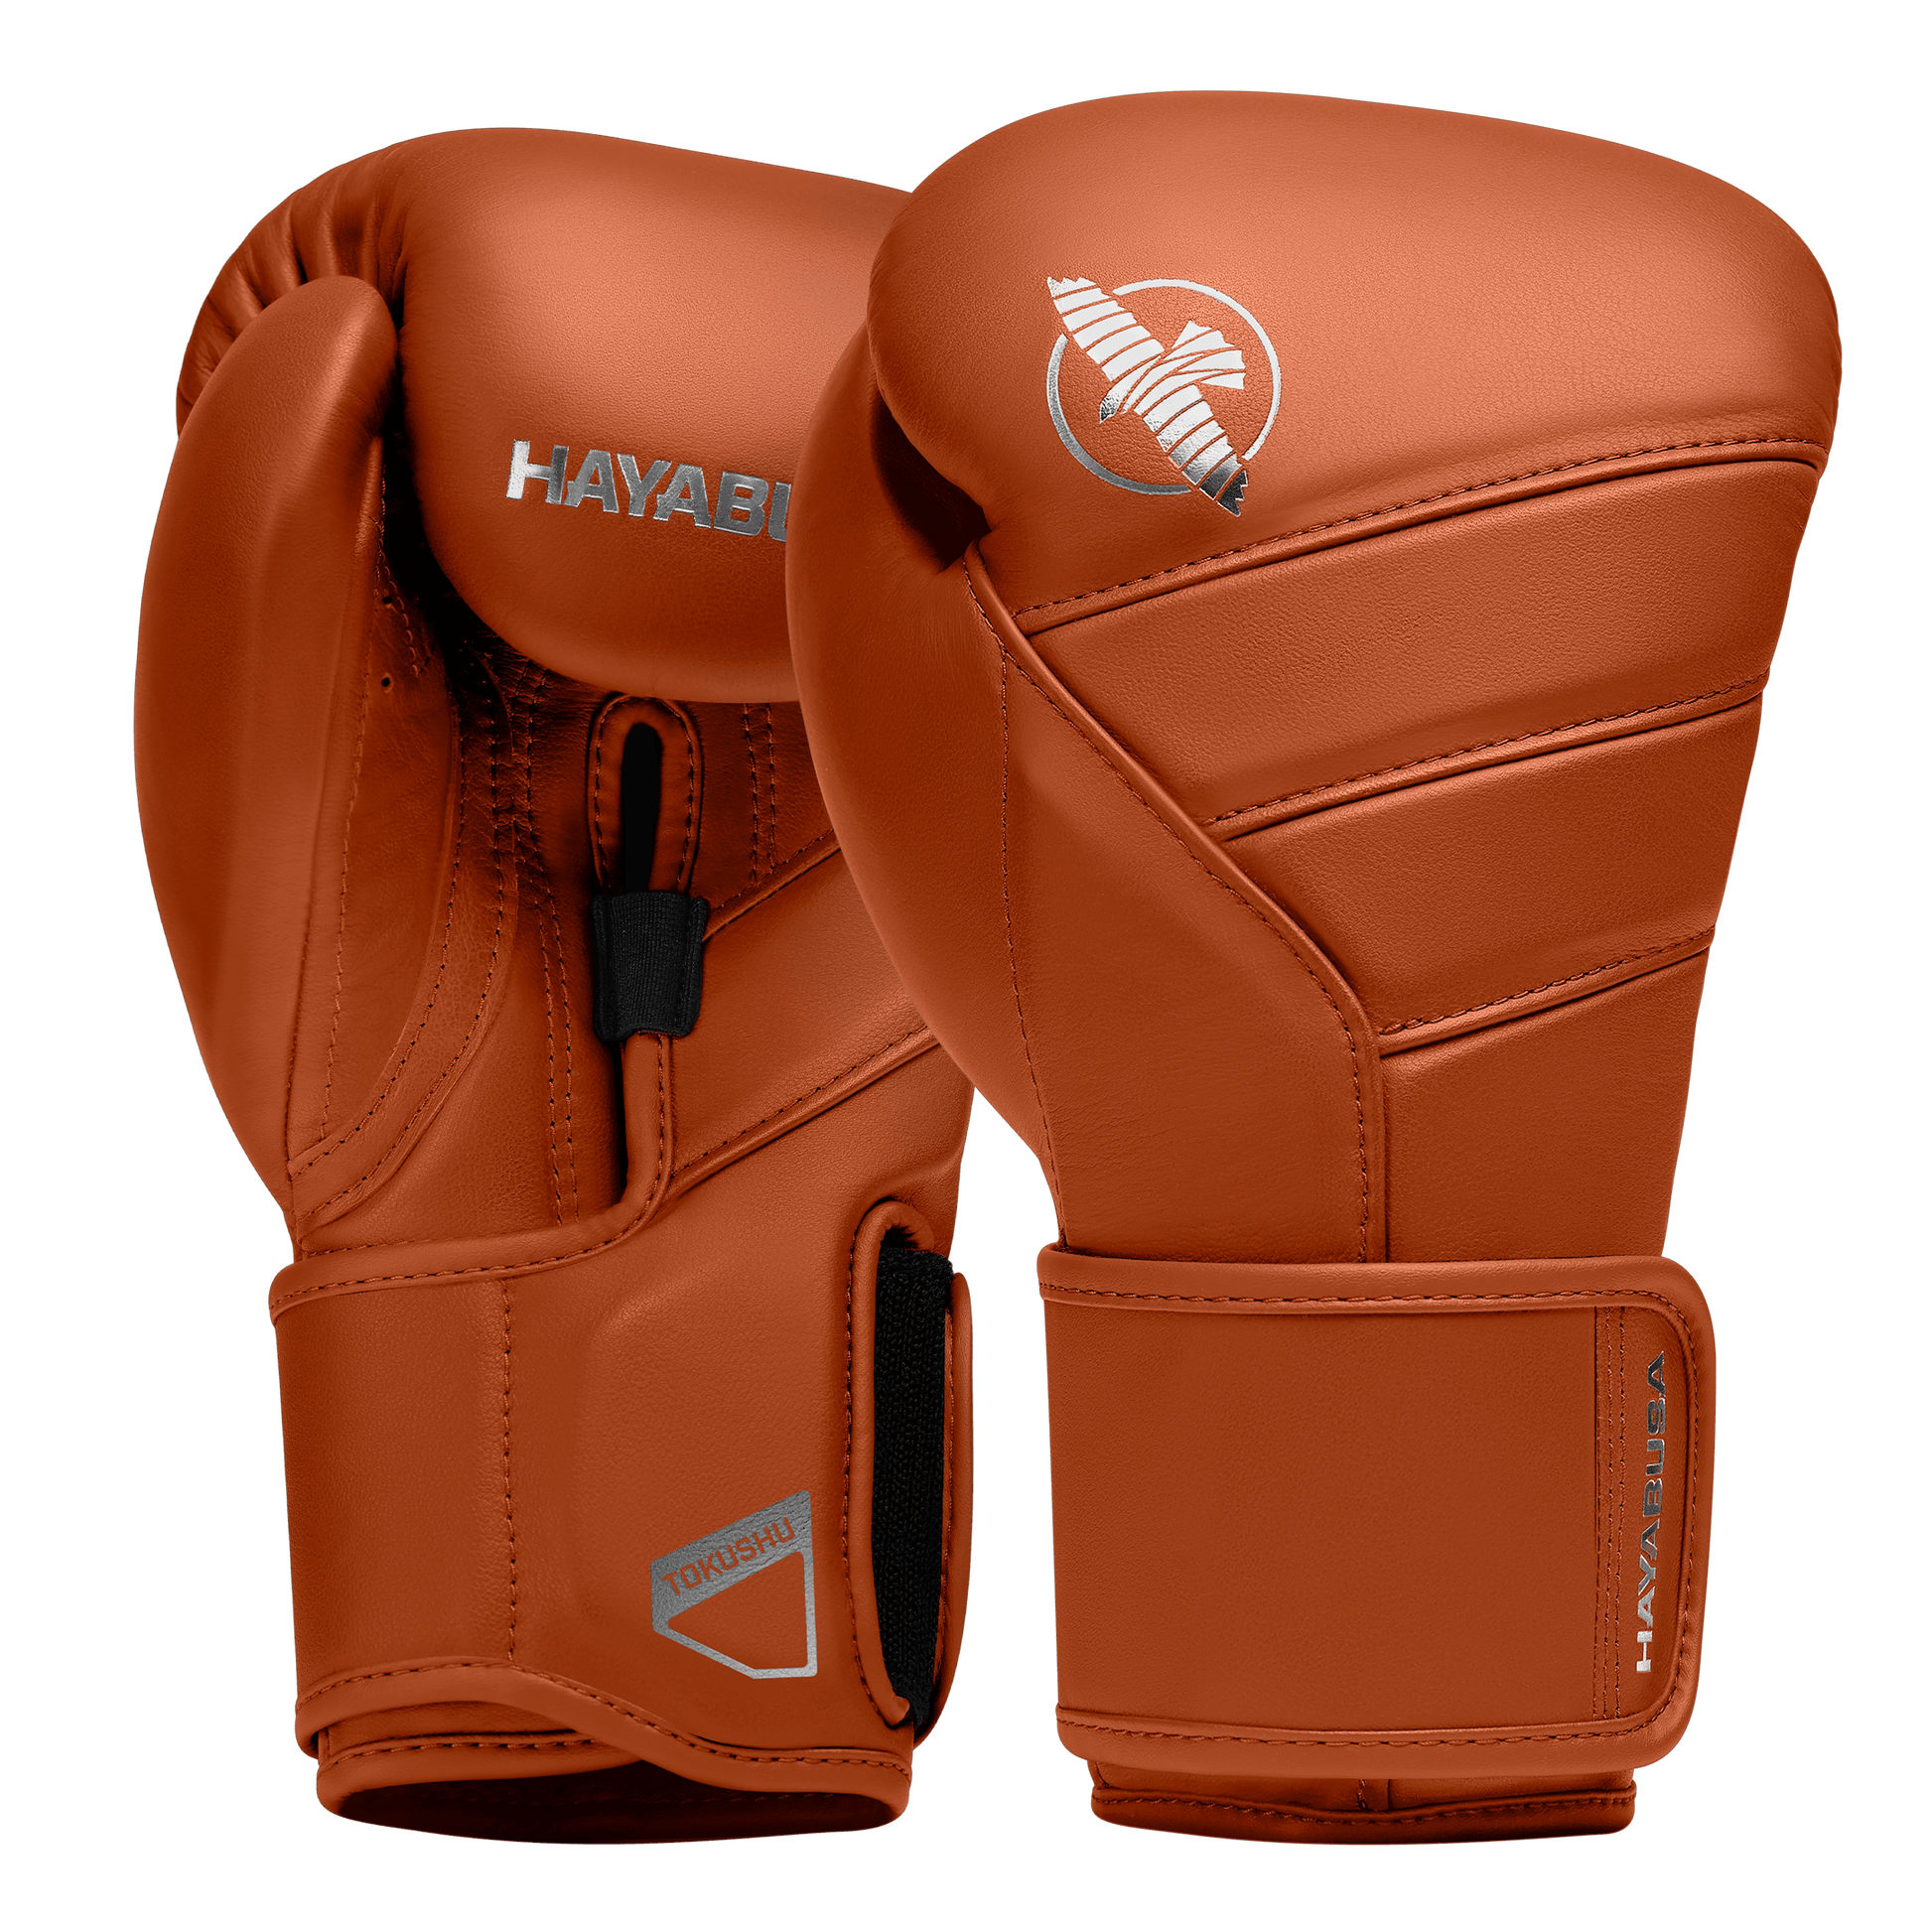 T3 Kanpeki Boxing Gloves - Violent Art Shop